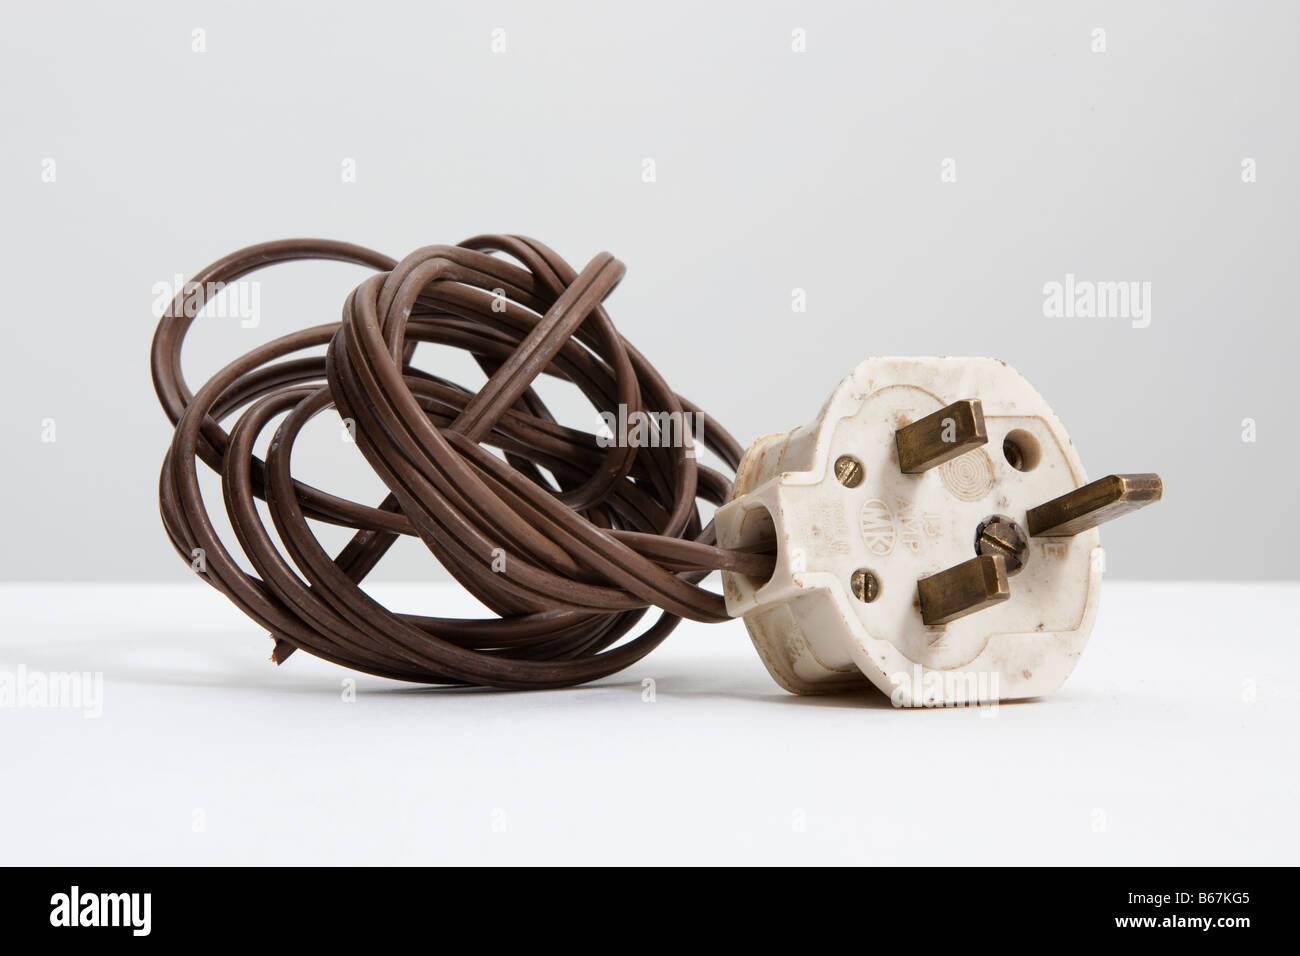 Old white , UK 13 amp standard de prise électrique et la bobine de brown flex Banque D'Images